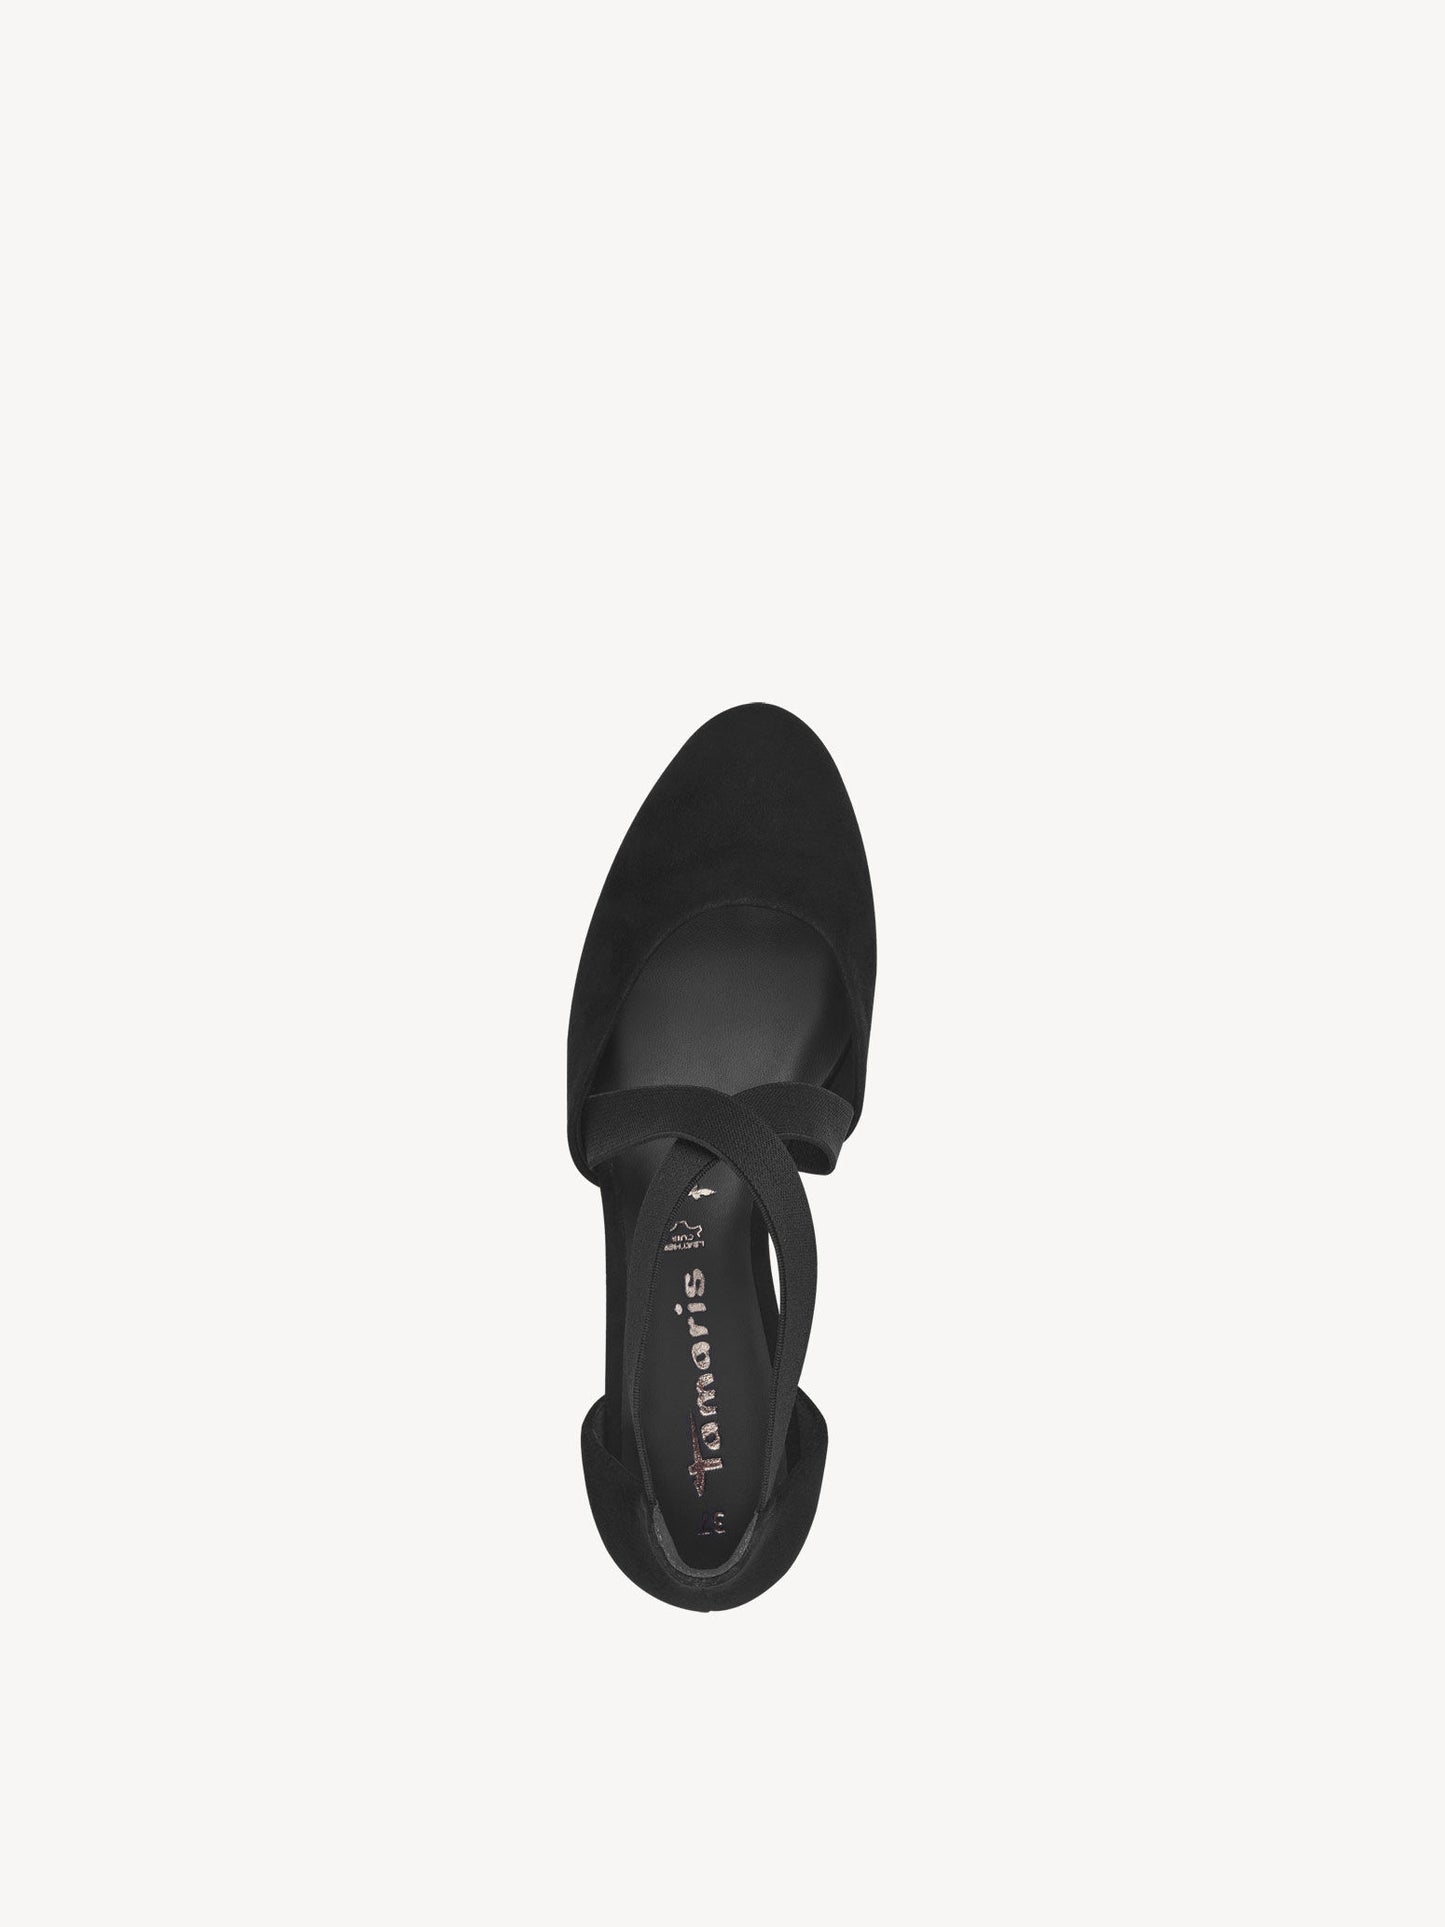 Tamaris Women's 1-22307-42 Leather Pump Shoes Black